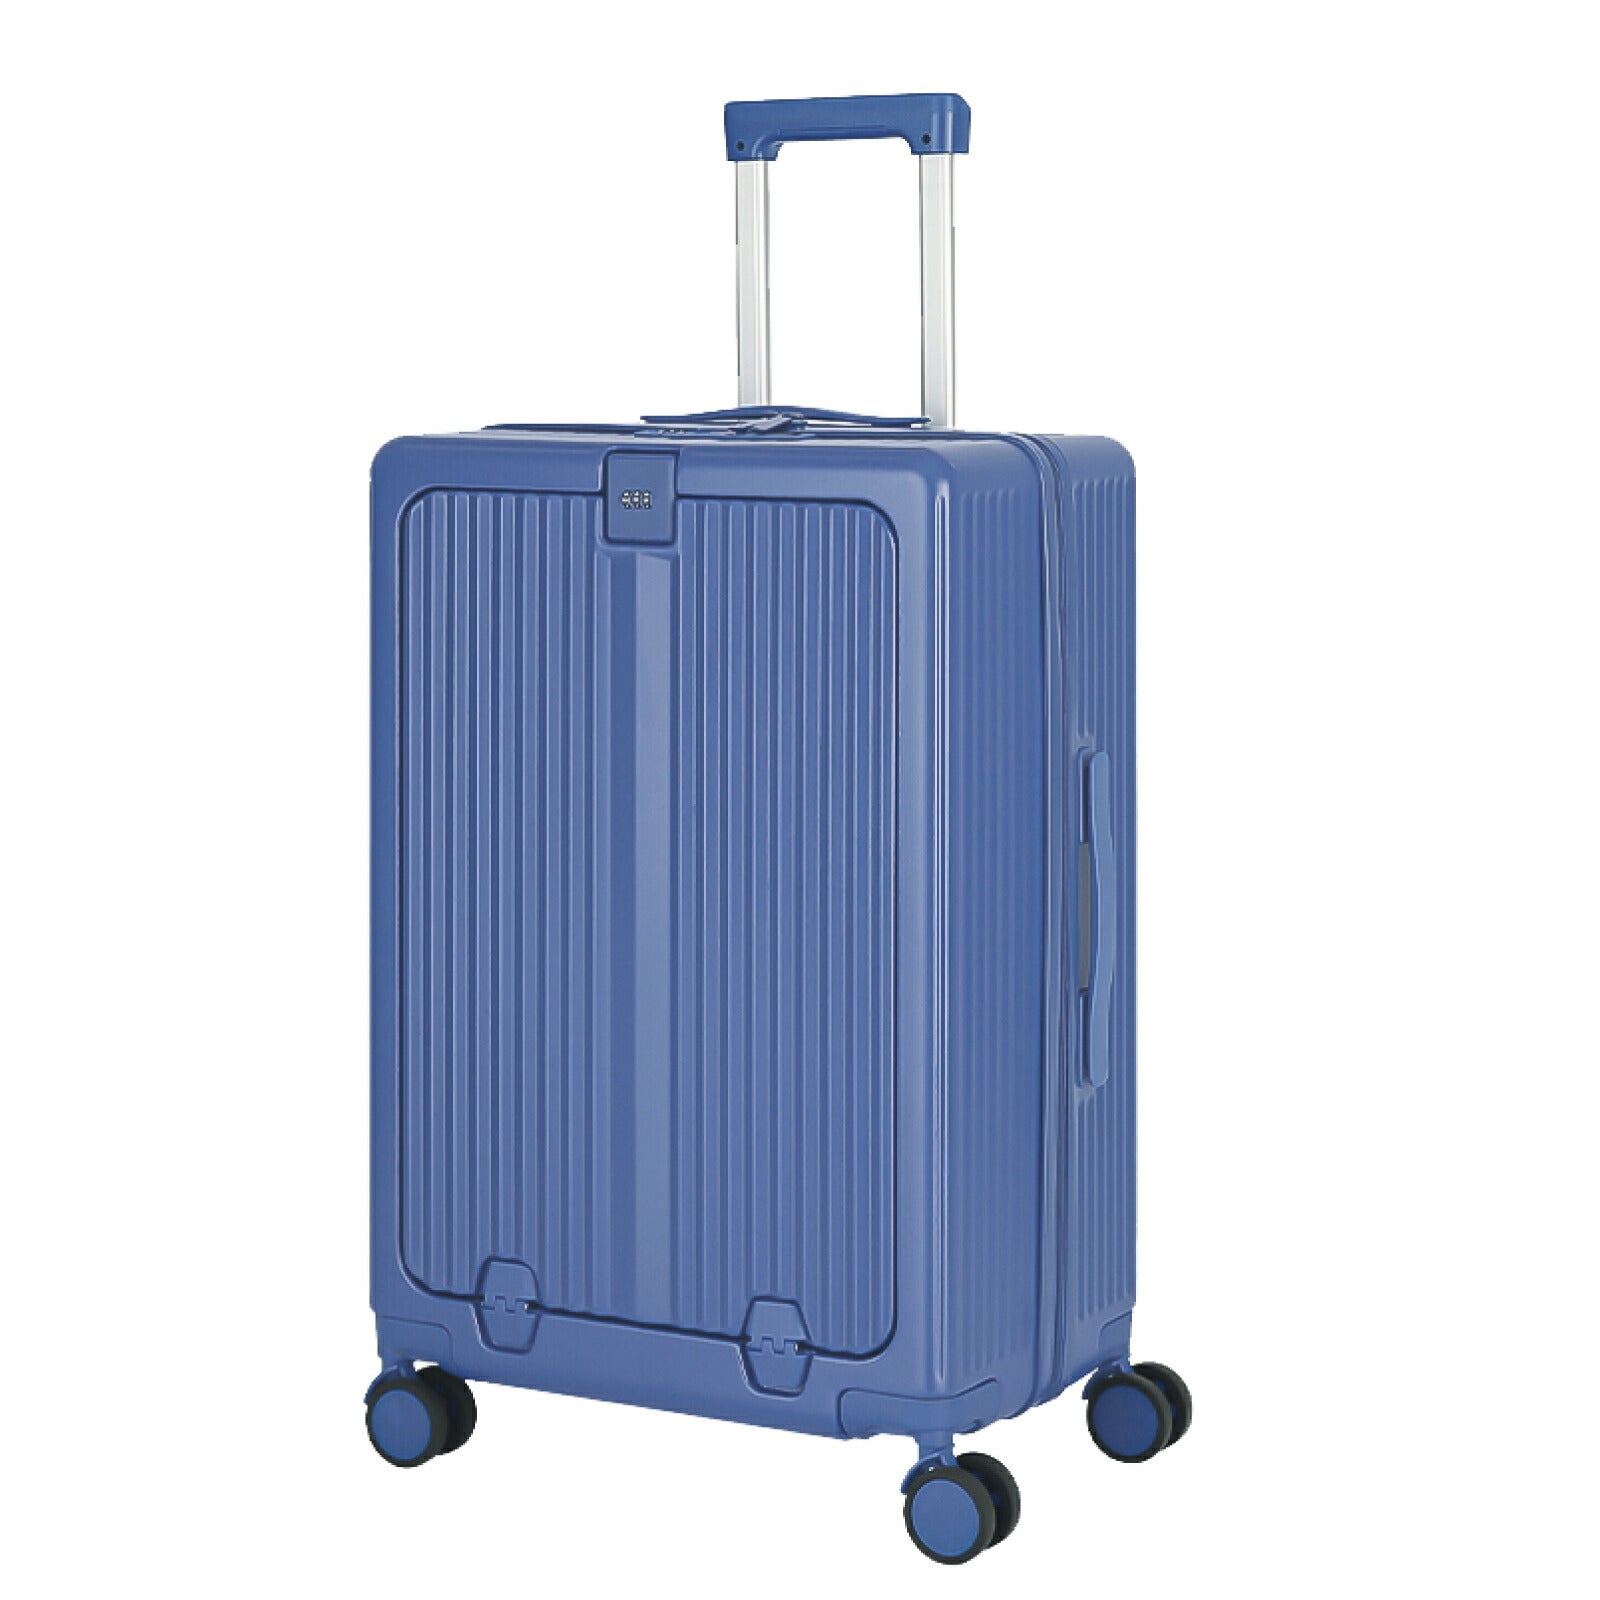 機内持ち込み スーツケース フレームタイプ フロントオープン USBポート付き キャリーケース Sサイズ 45L 8カラー選 1-3日用 泊まる カップホルダー付き 軽量 大容量 多収納ポケット 修学旅行 海外旅行 sc301-20